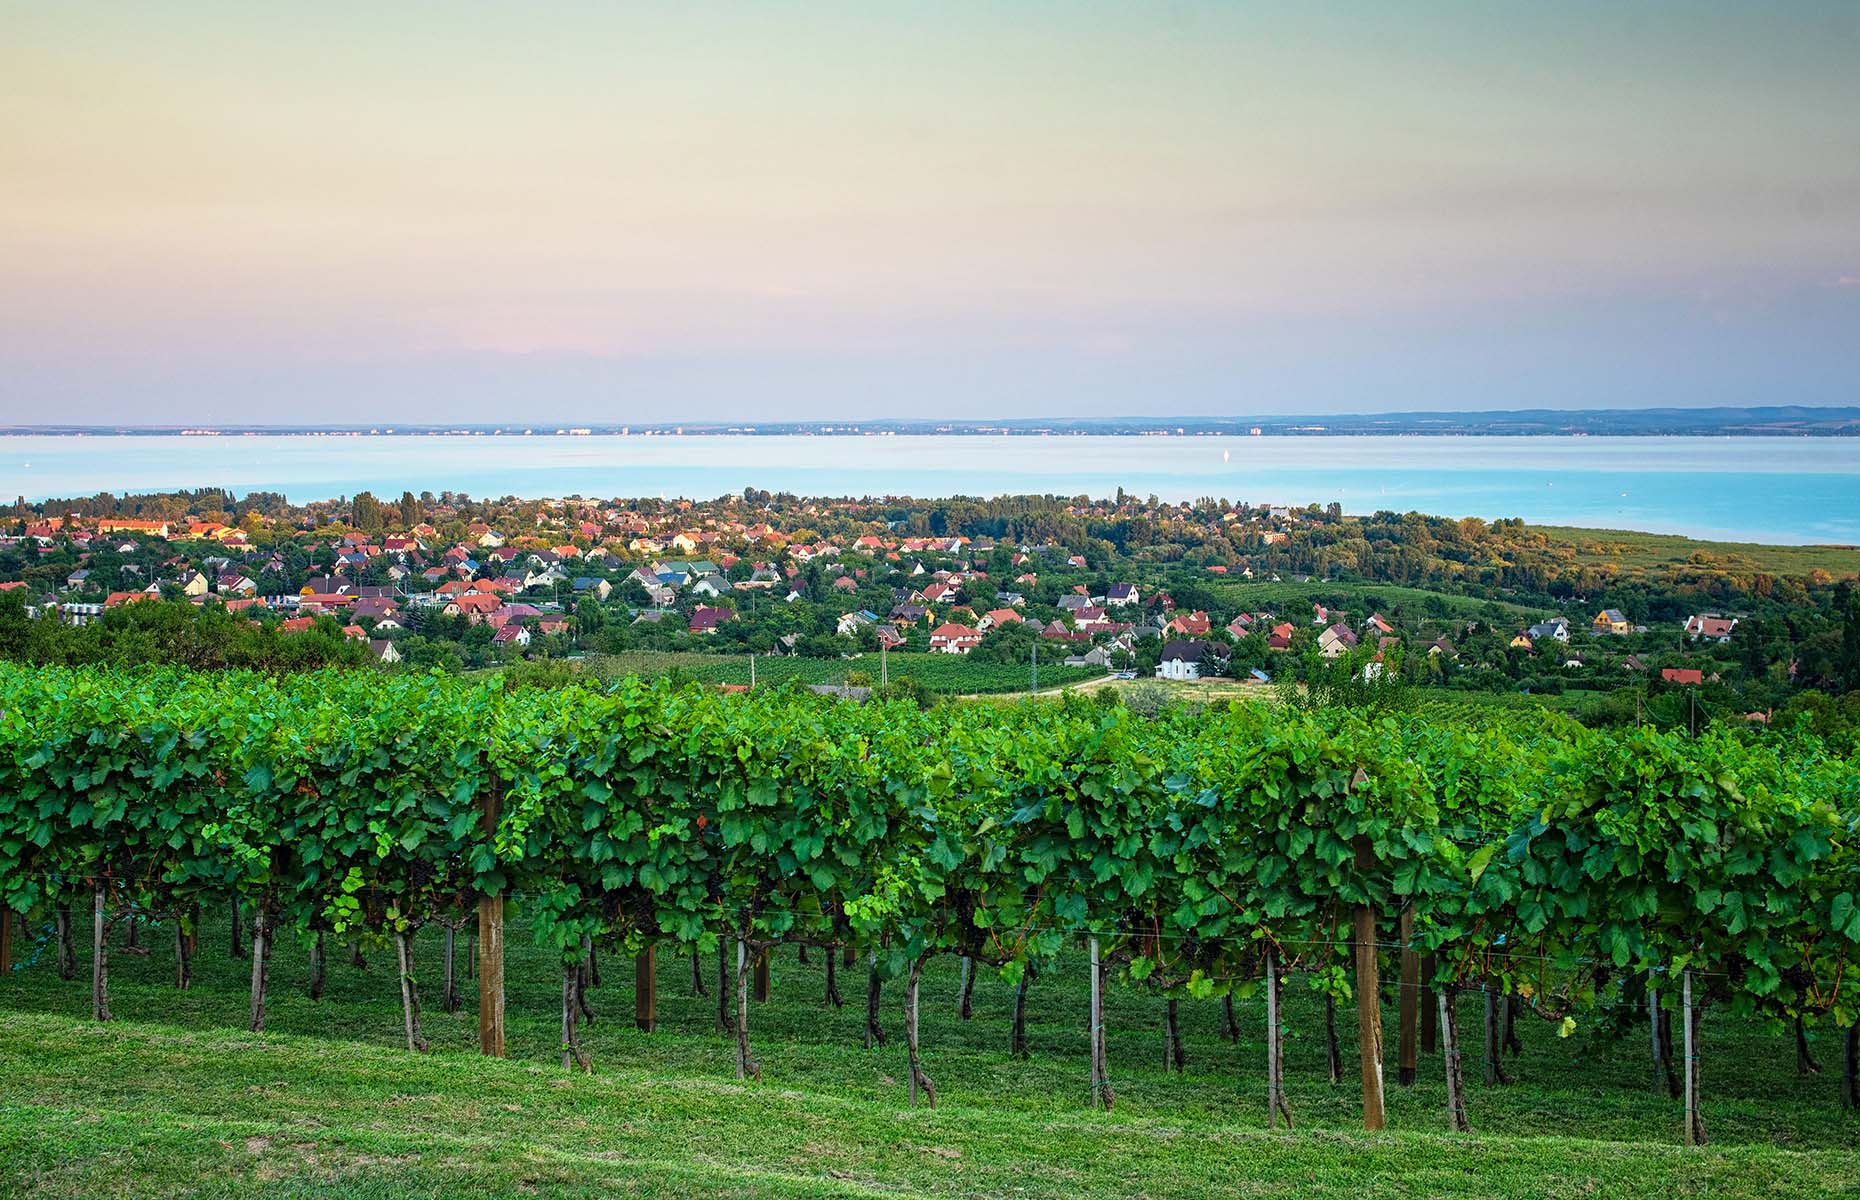 Lake Balaton wine (Image: Botond Horvath/Shutterstock)